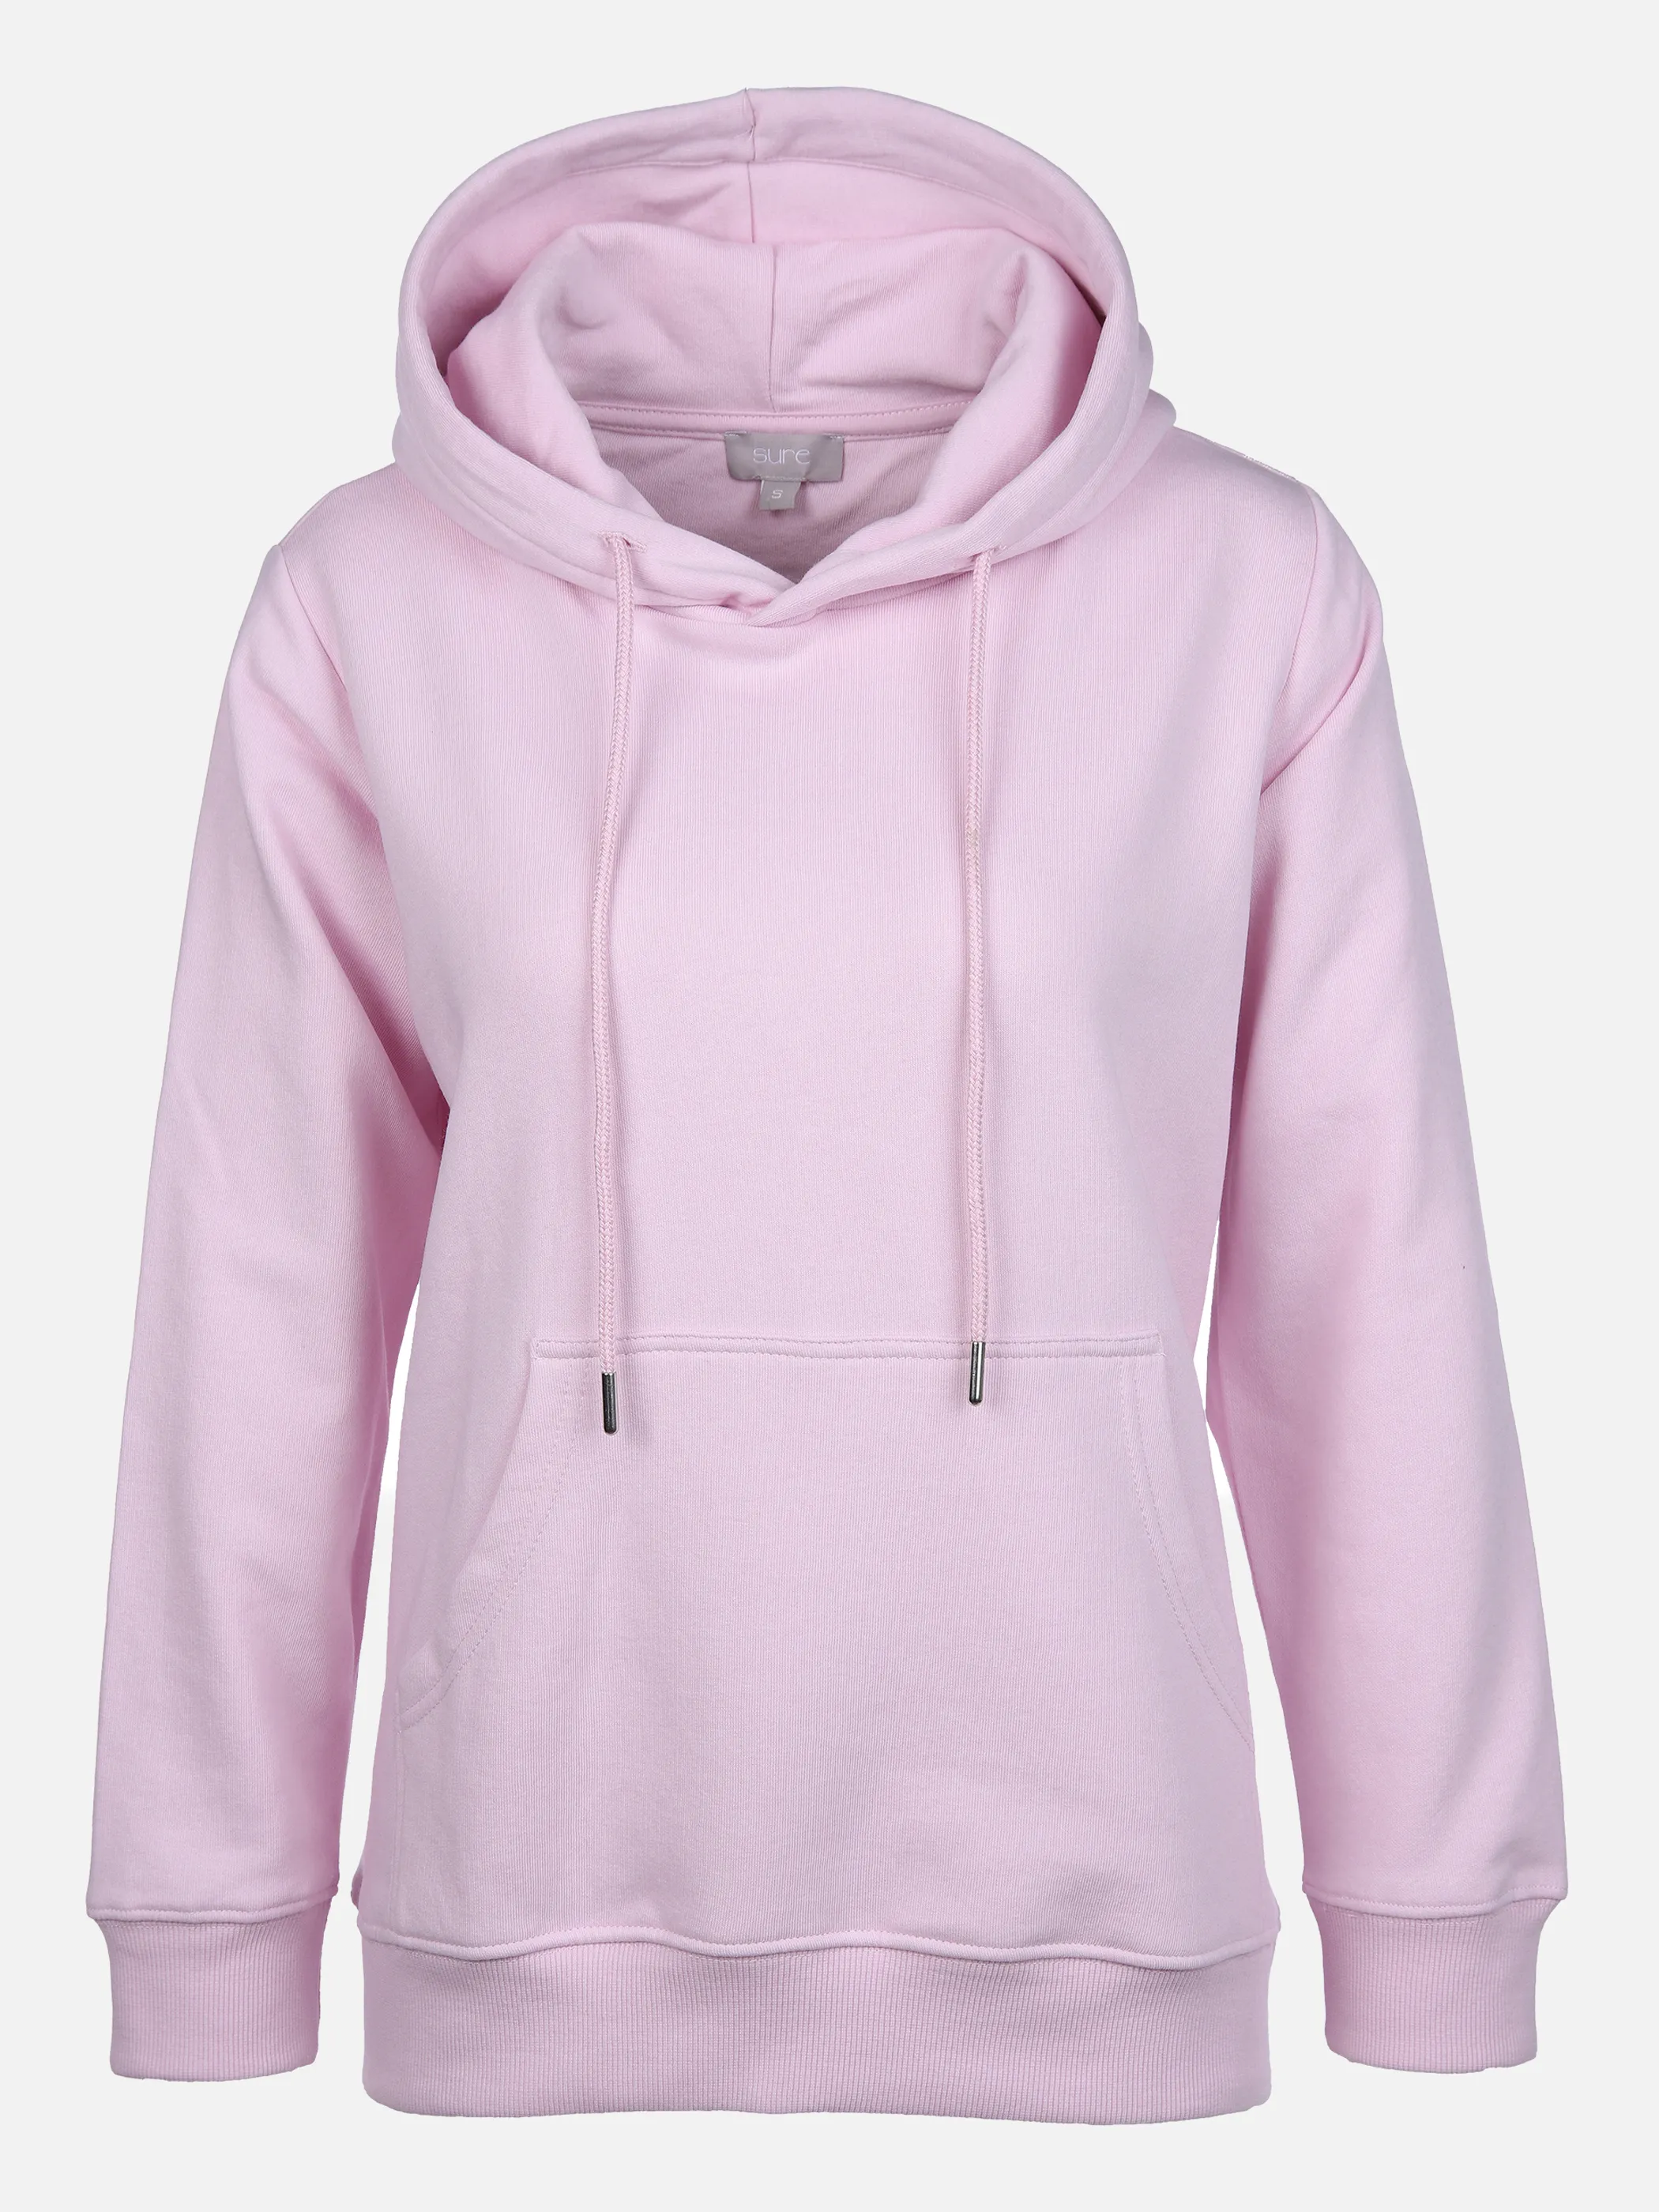 Sure Da-Sweatshirt mit Kapuze Pink 861307 PINK 1